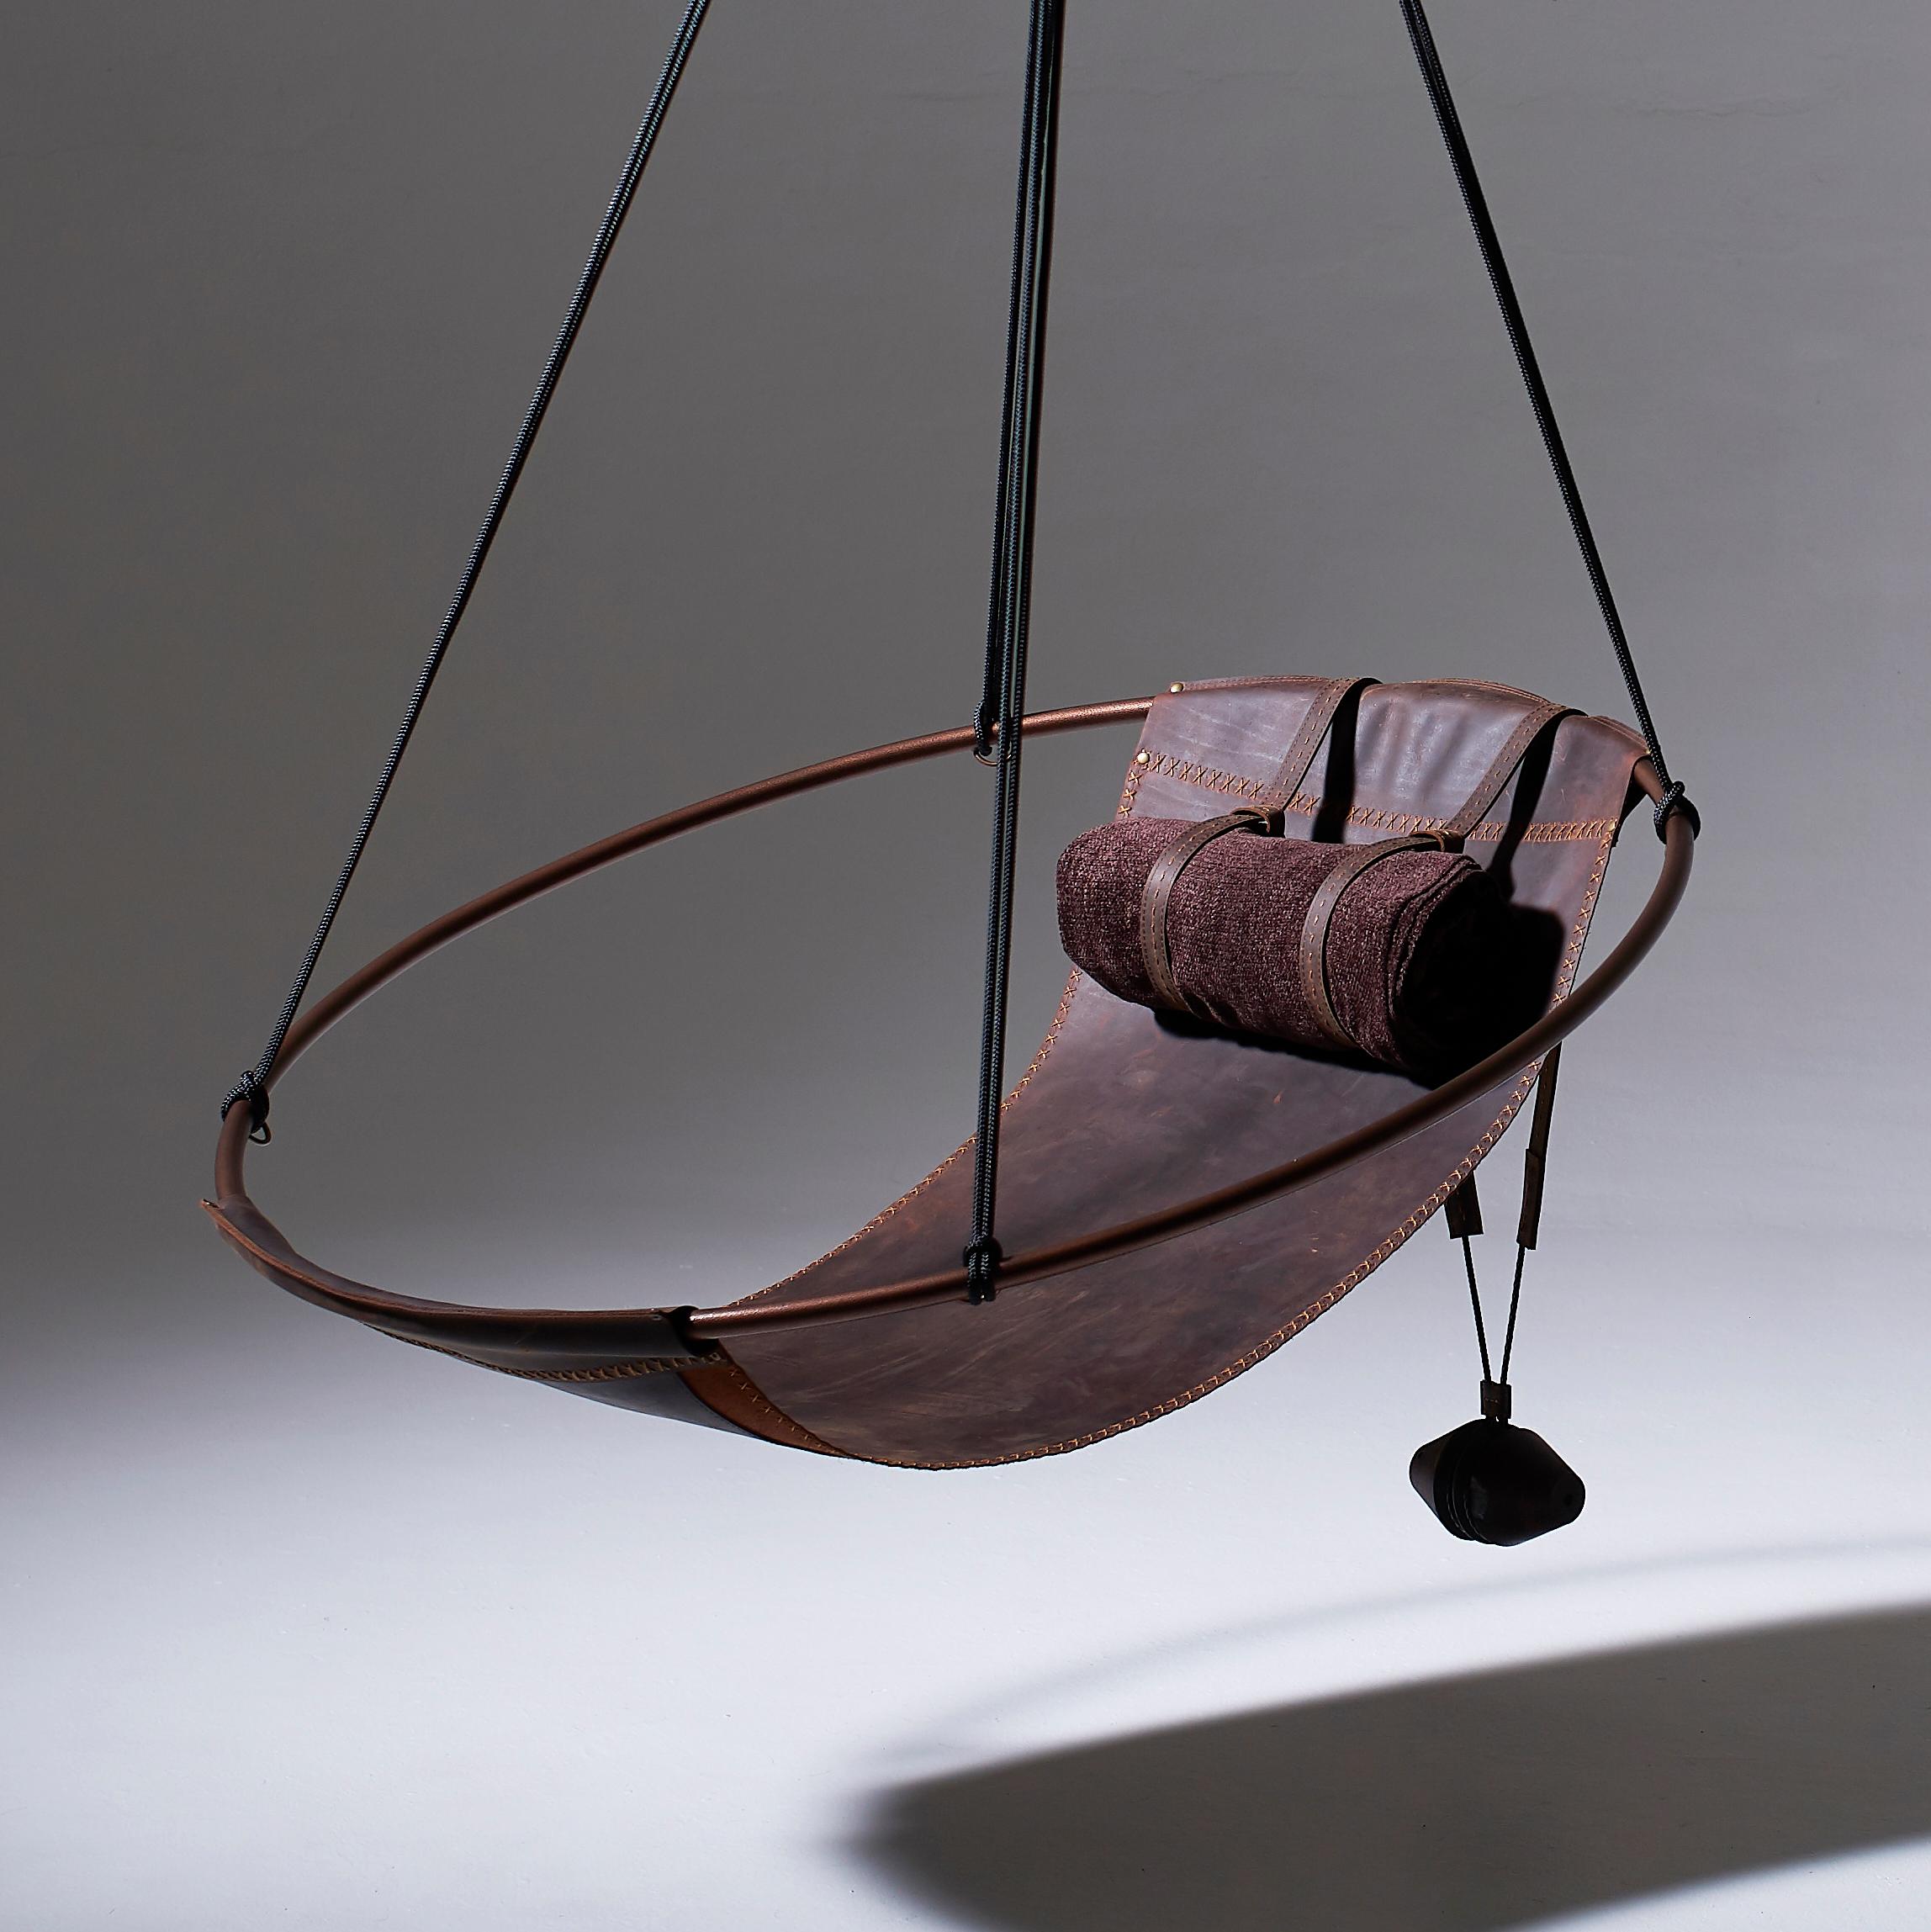 Dépouillé de tout superflu, ce fauteuil suspendu est doté d'un cadre circulaire dans lequel le siège en cuir est suspendu librement, pour créer une expérience élégante, sexy et très confortable. Les lignes épurées et la légèreté de cette chaise lui